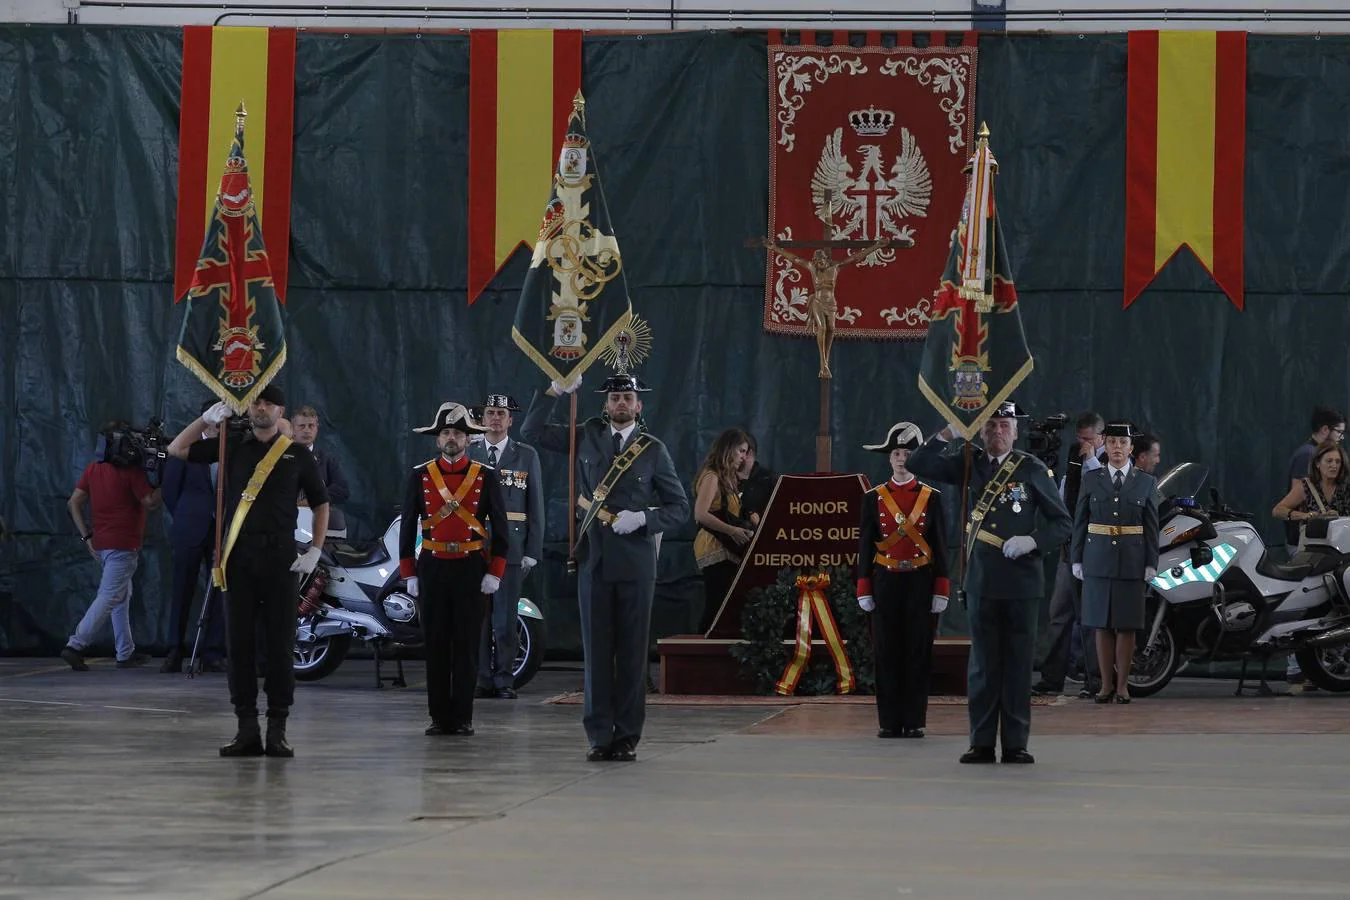 La celebración de la patrona de la Guardia Civil, en imágenes